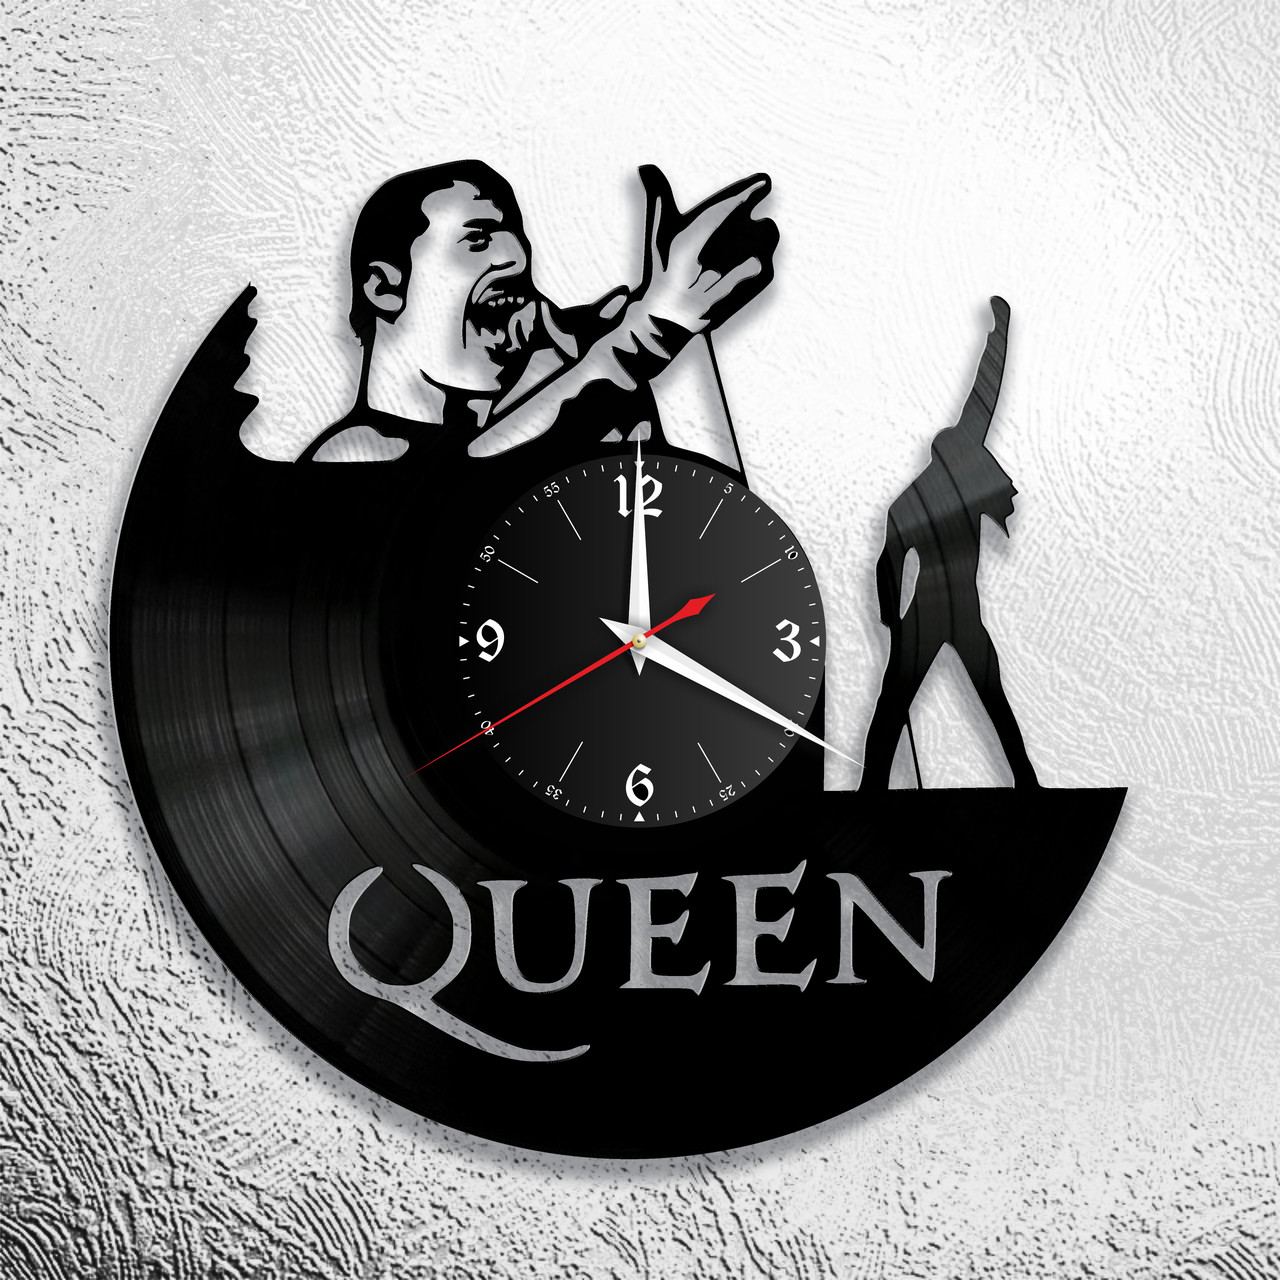 Оригинальные часы из виниловых пластинок "Queen"  версия 3, фото 1